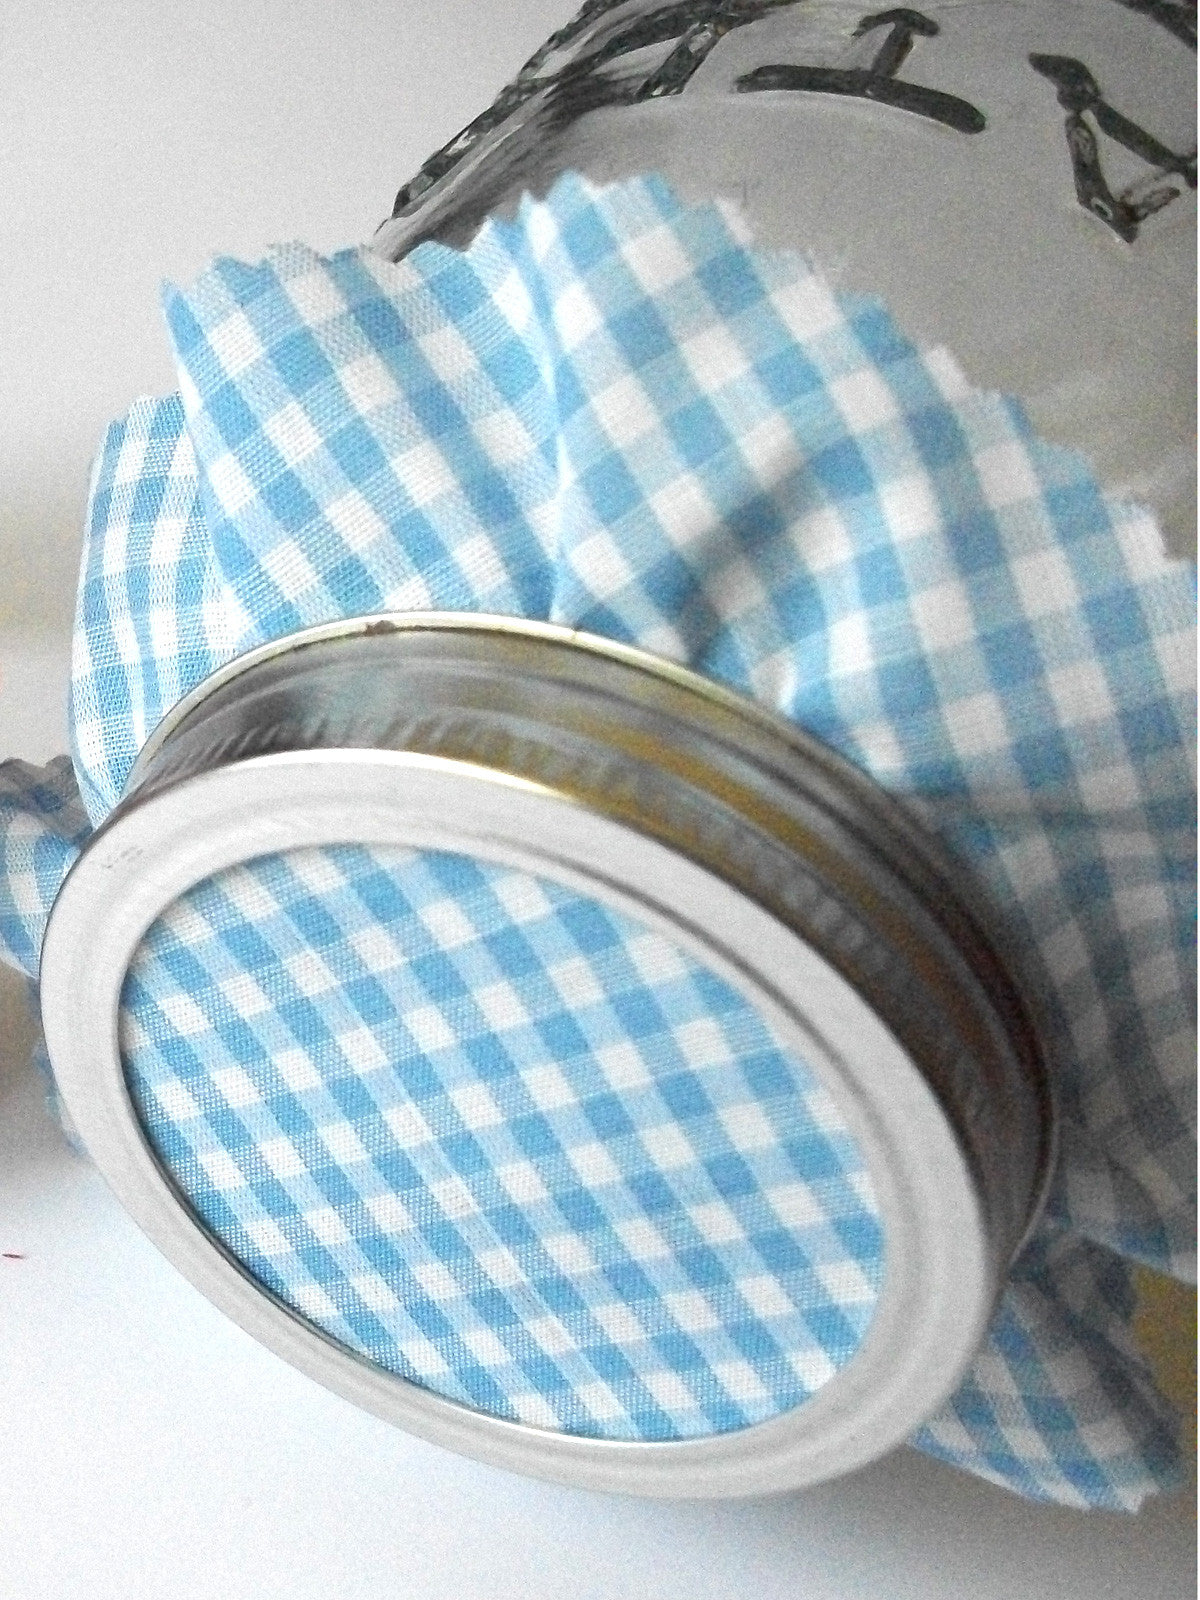 Blue Gingham Jam Jar Covers | CanningCrafts.com